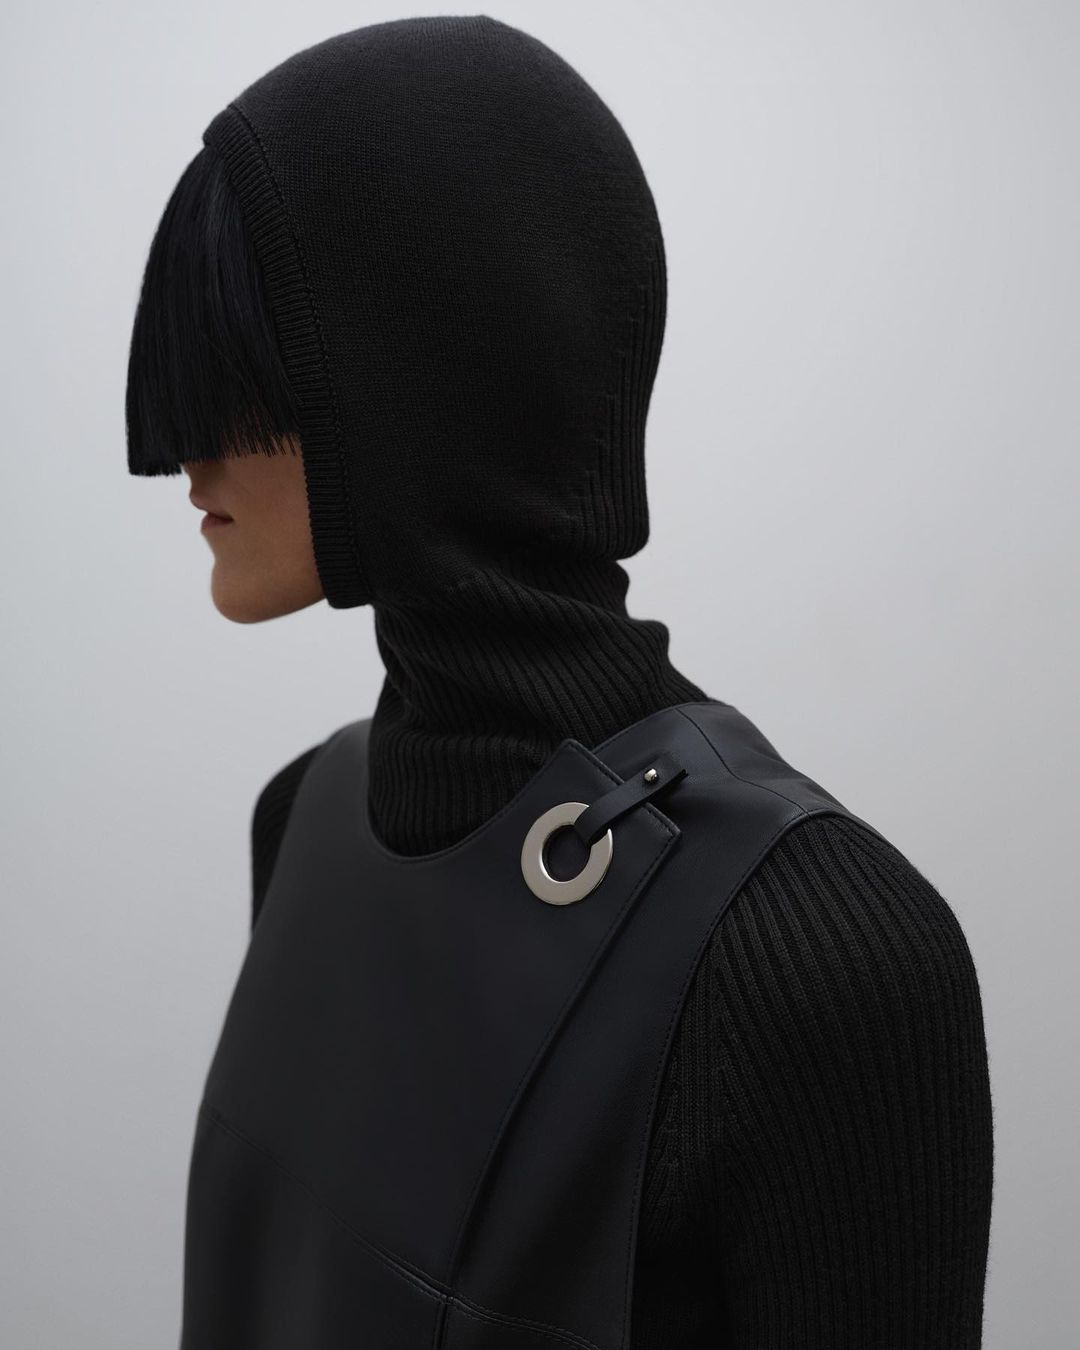 модный головной убор зима 2021 2022 теплое на голову шапка балаклава капор вязаный черный